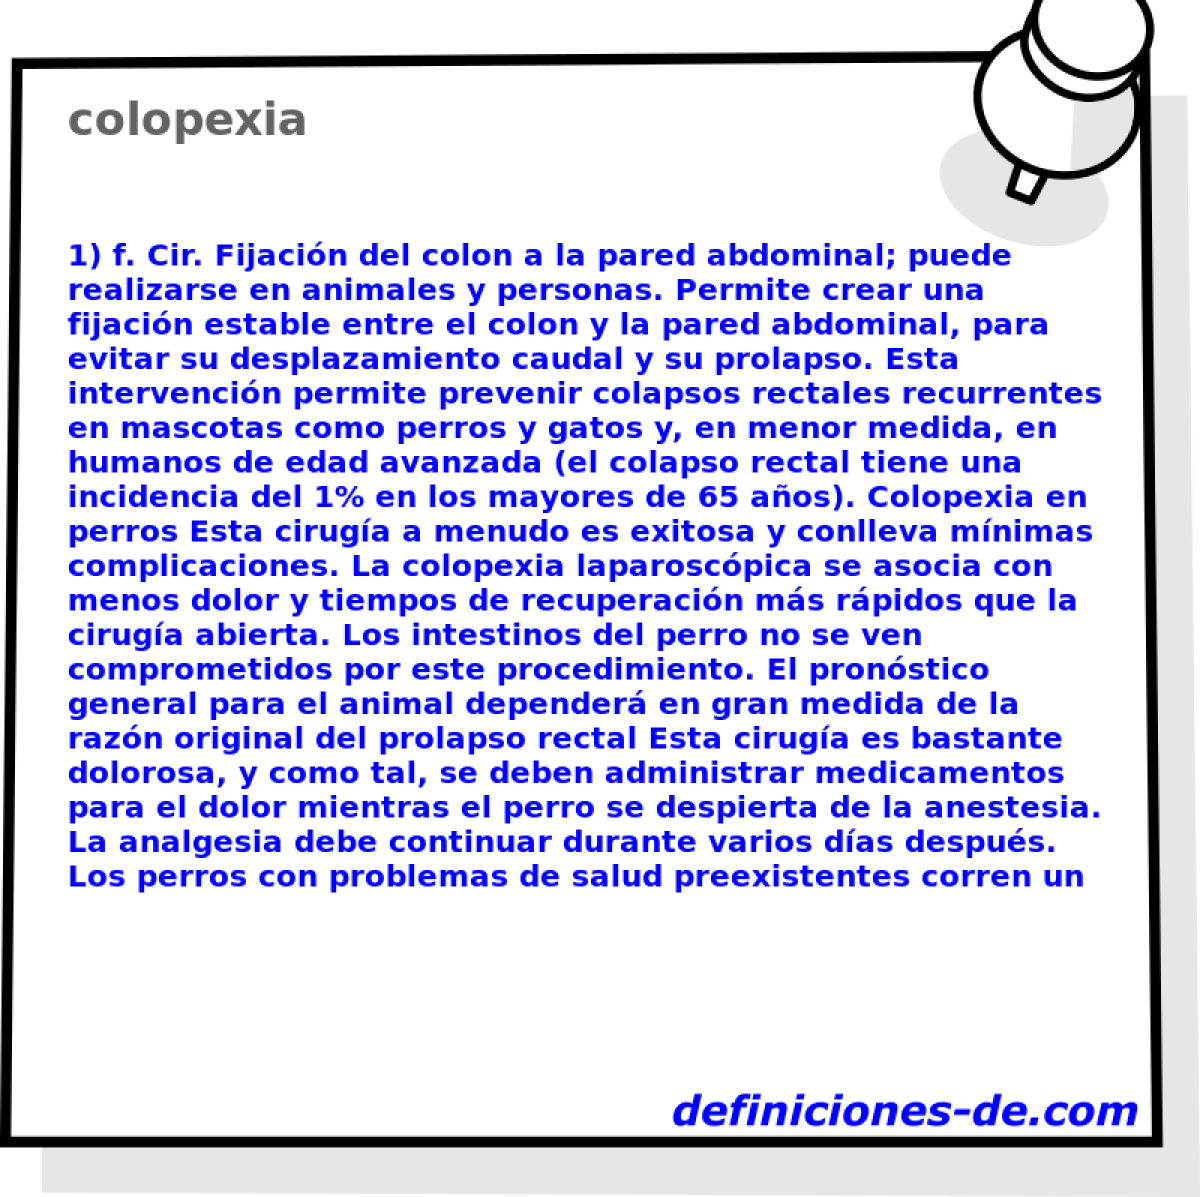 colopexia 